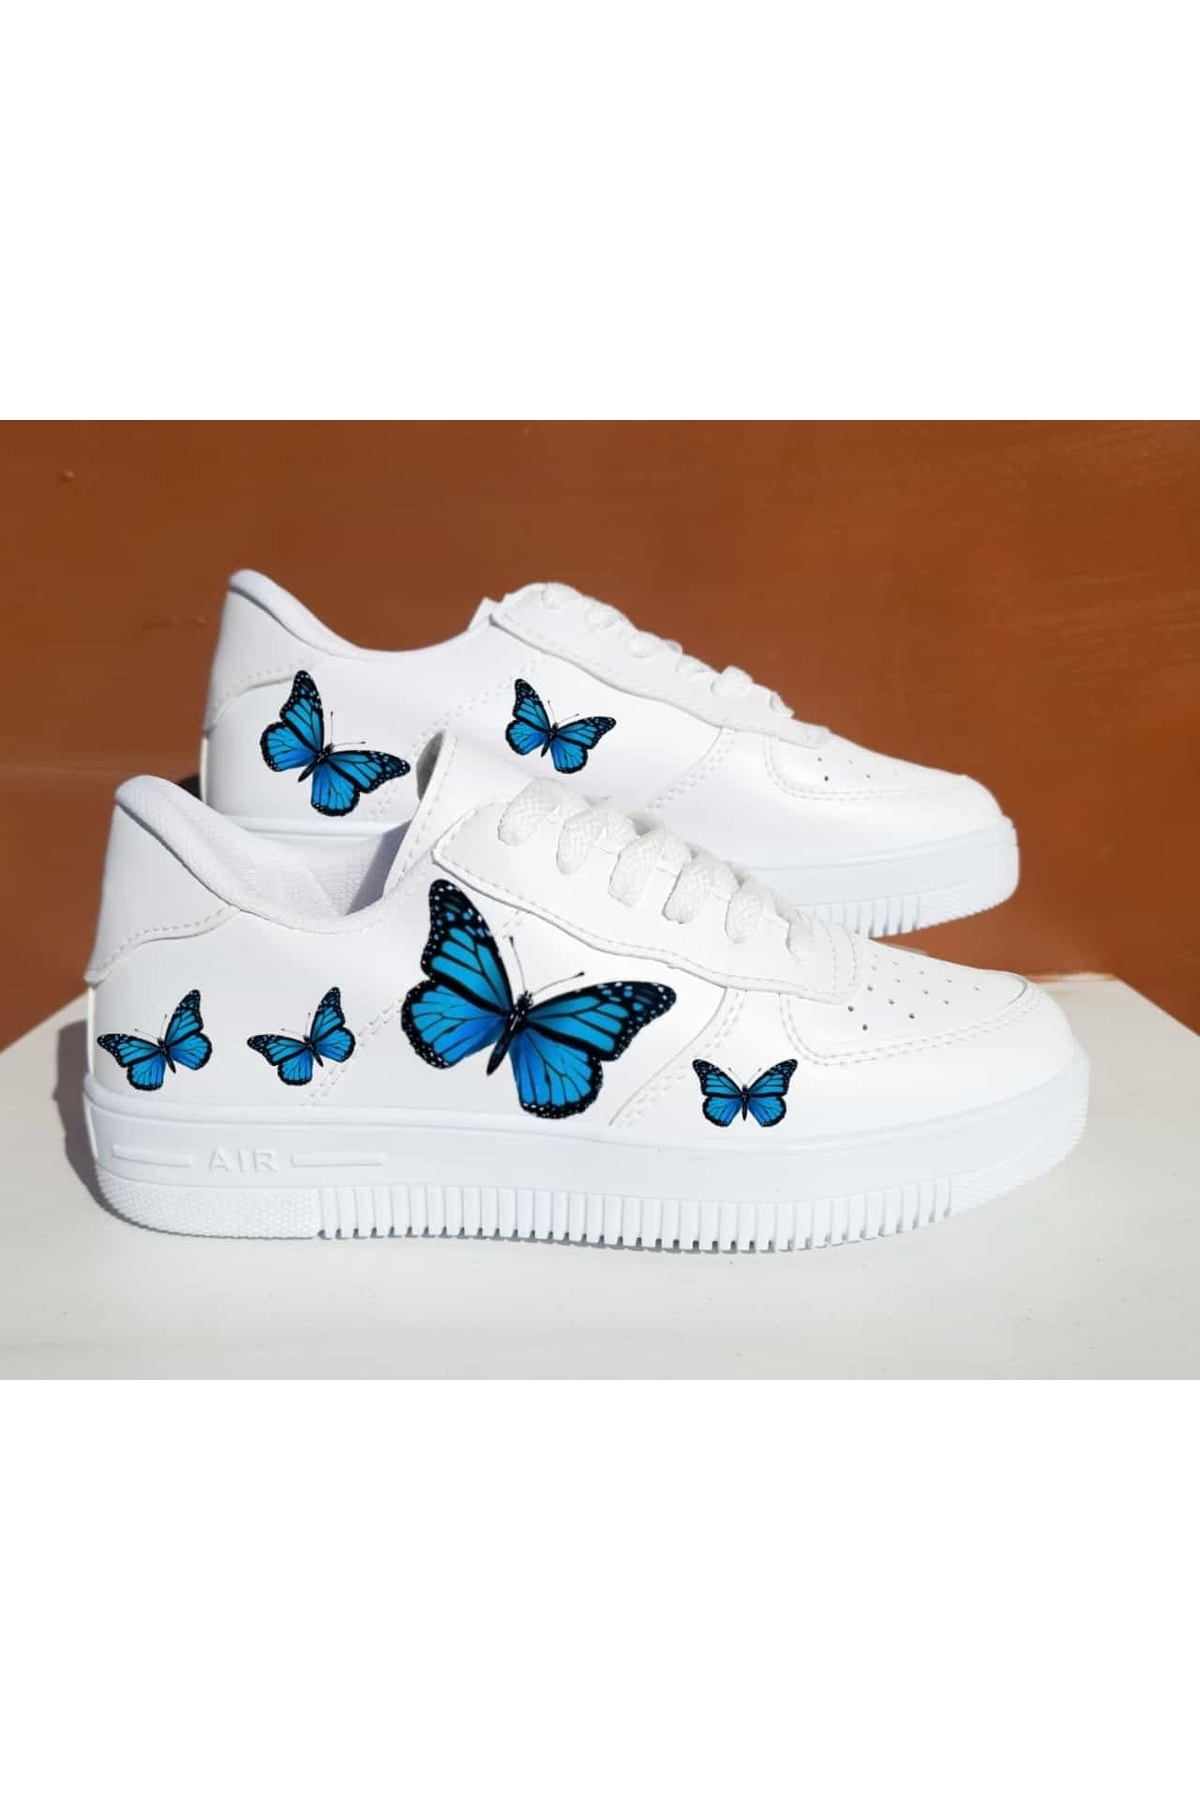 Amazoonkids Custom Mavi Kelebek Baskılı Sneaker Spor Ayakkabı